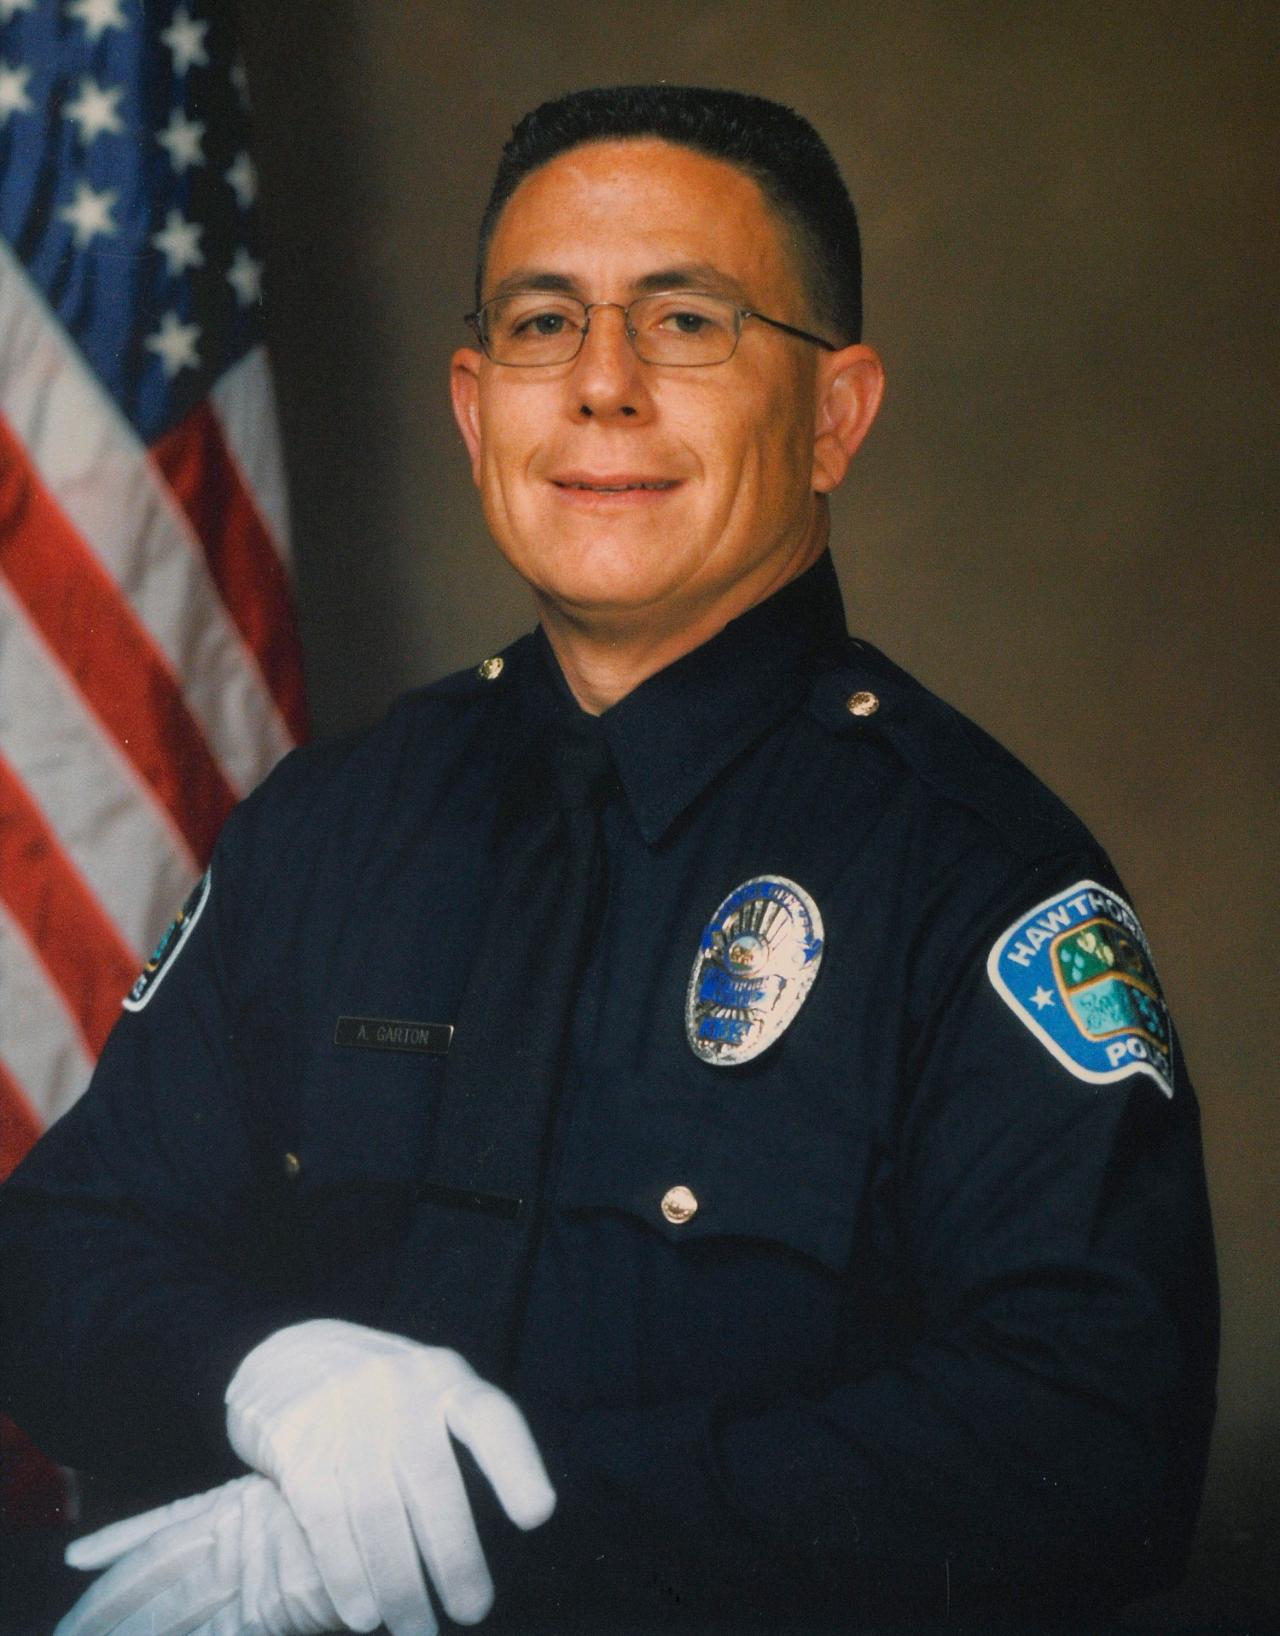 Police Officer Andrew Scott Garton | Hawthorne Police Department, California